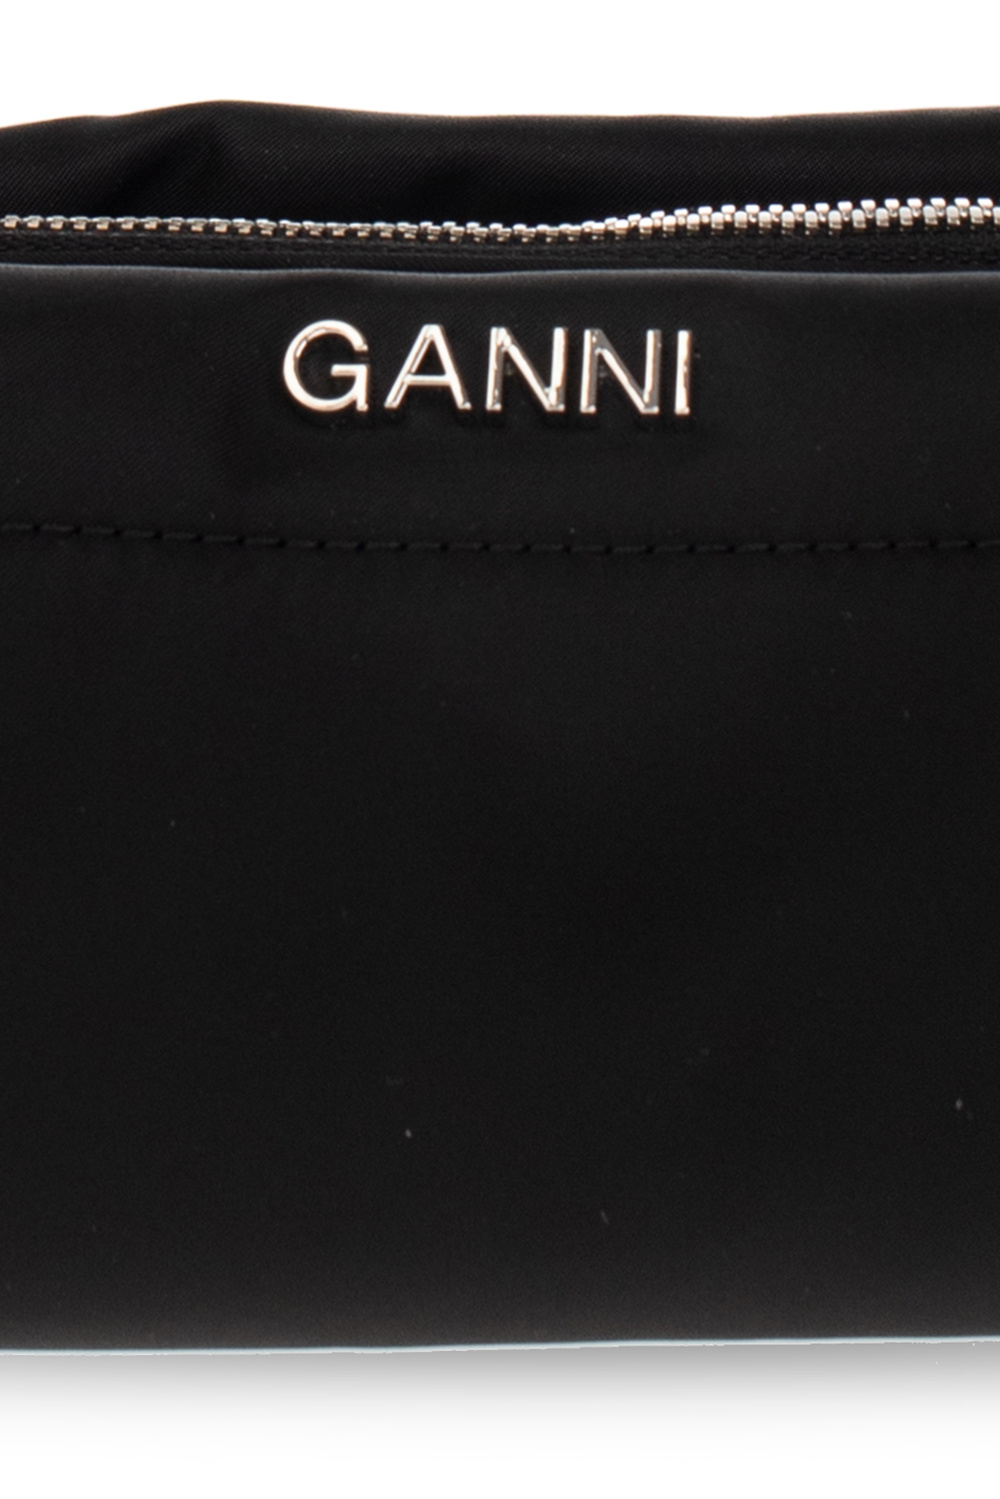 Ganni Shoulder Python bag with logo